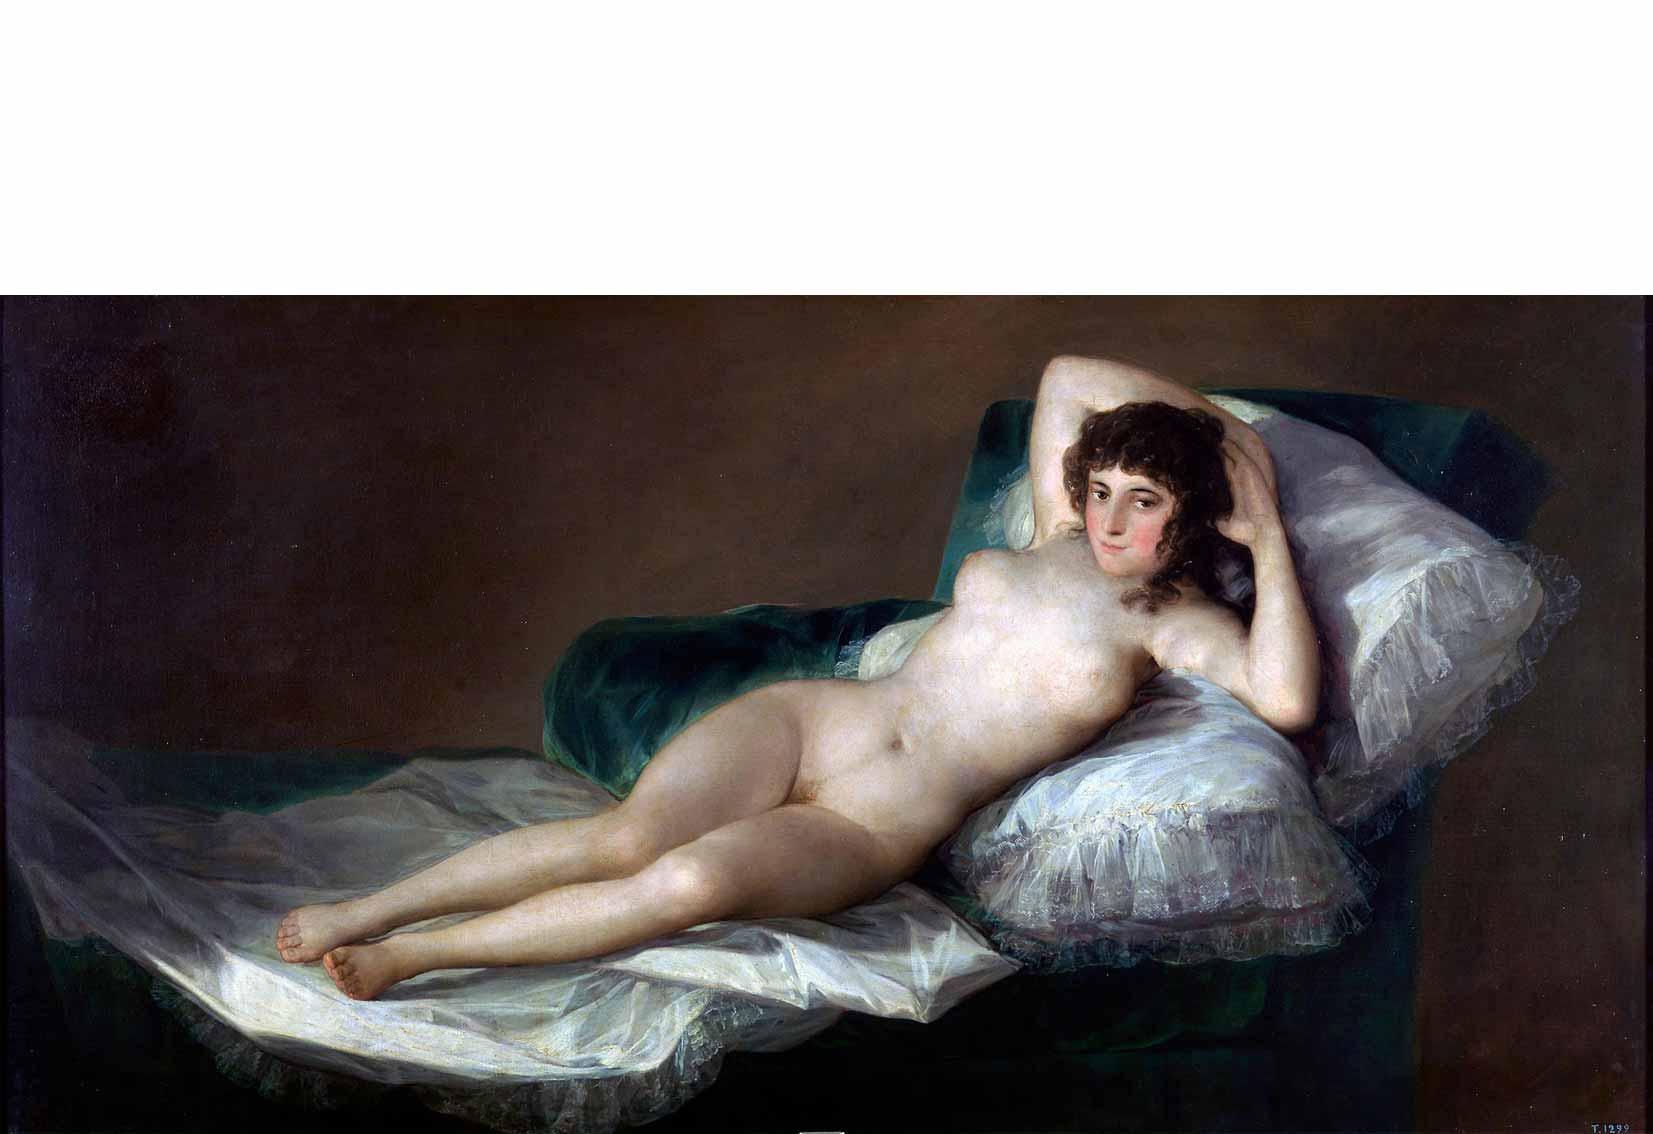 Francisco Goya, The Nude Maja, c. 1800.